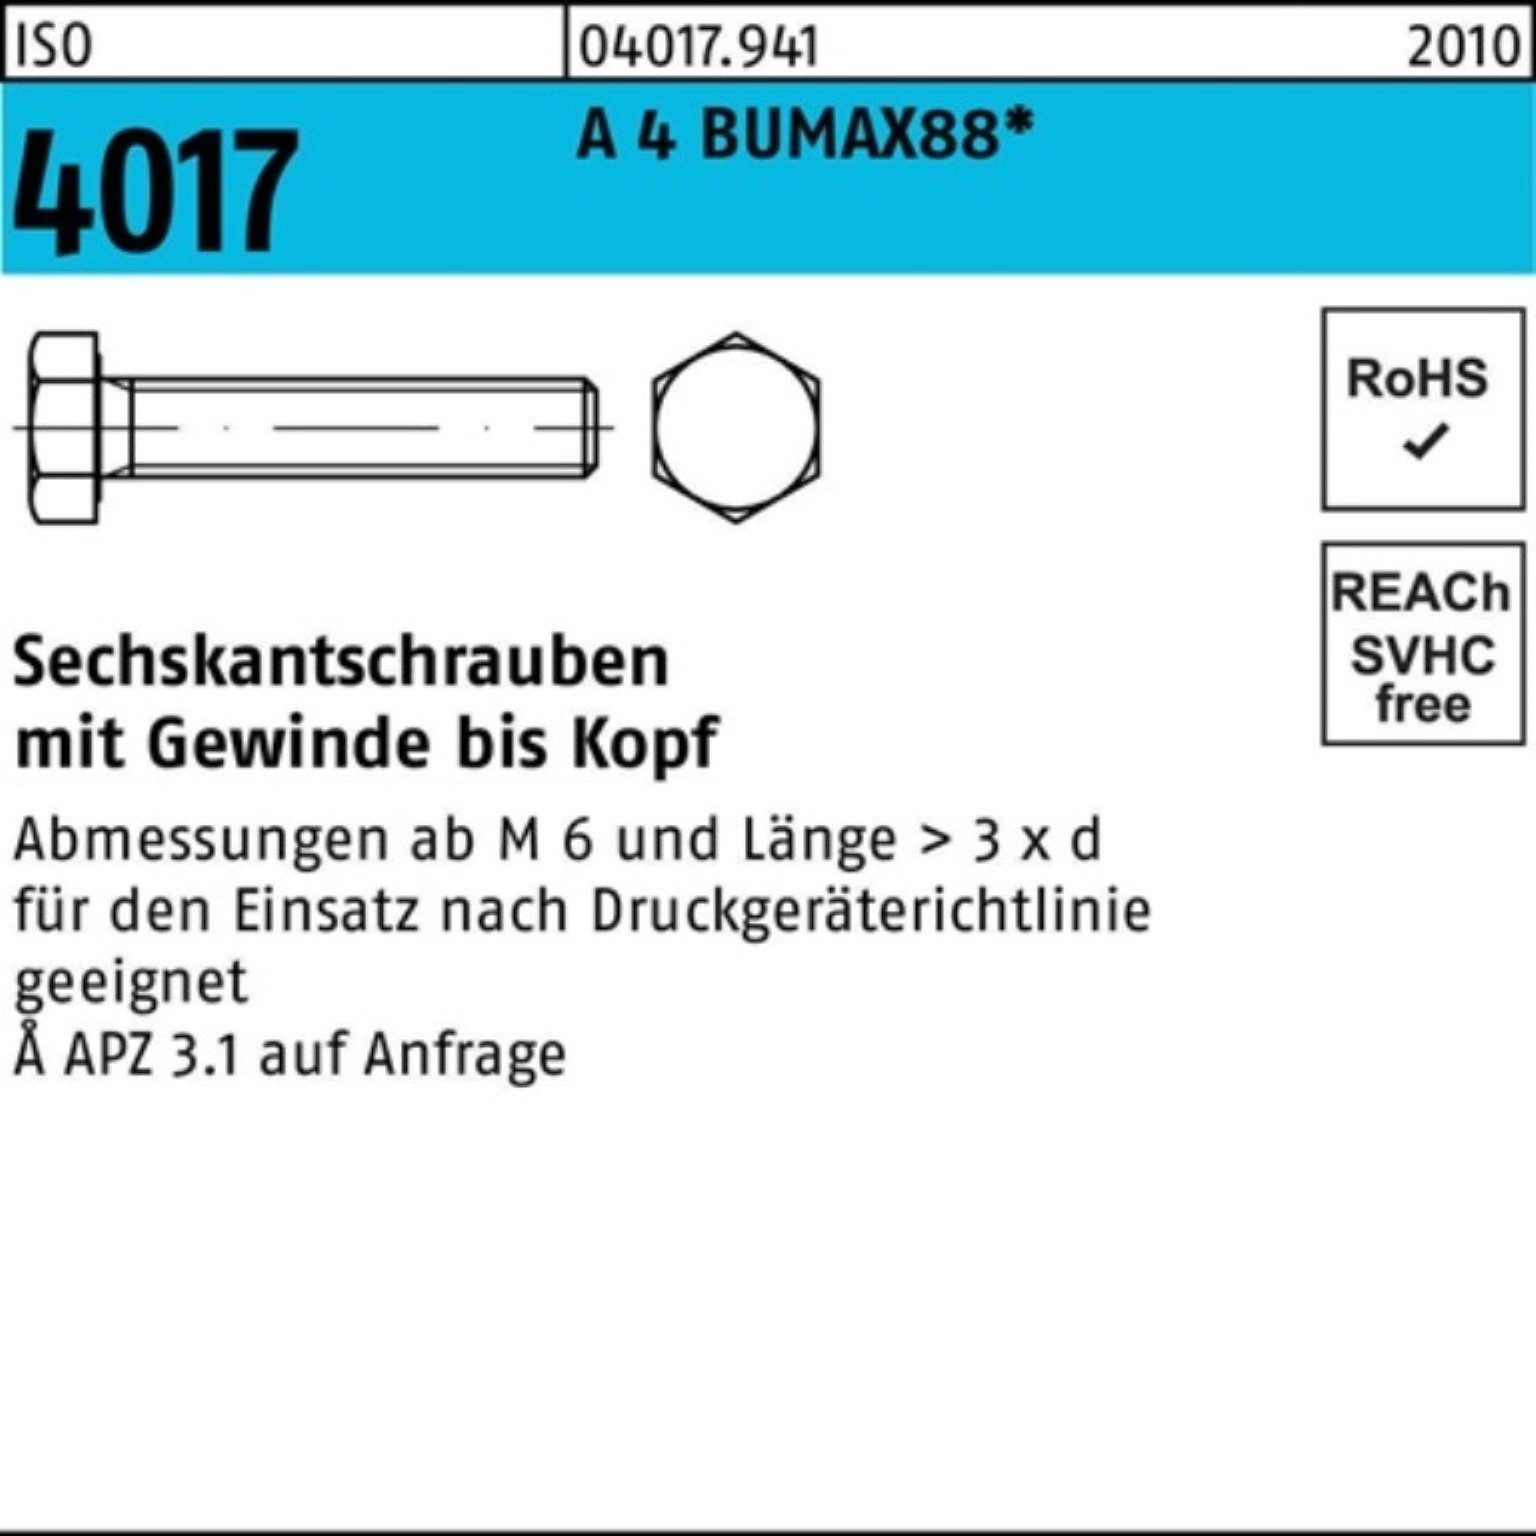 Bufab Sechskantschraube 100er Pack Sechskantschraube ISO 4017 VG M10x 40 A 4 BUMAX88 50 Stück